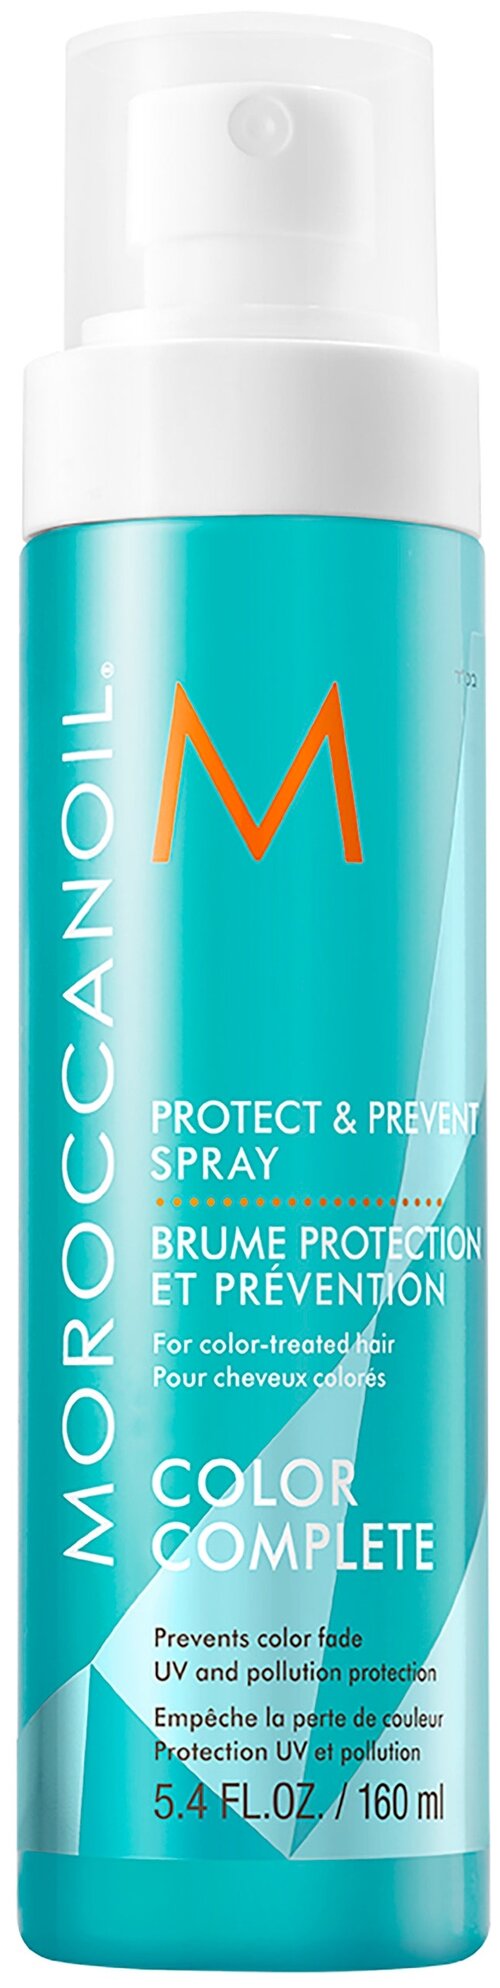 Moroccanoil спрей для сохранения цвета волос Protect & Prevent Spray, 204 г, 160 мл, аэрозоль